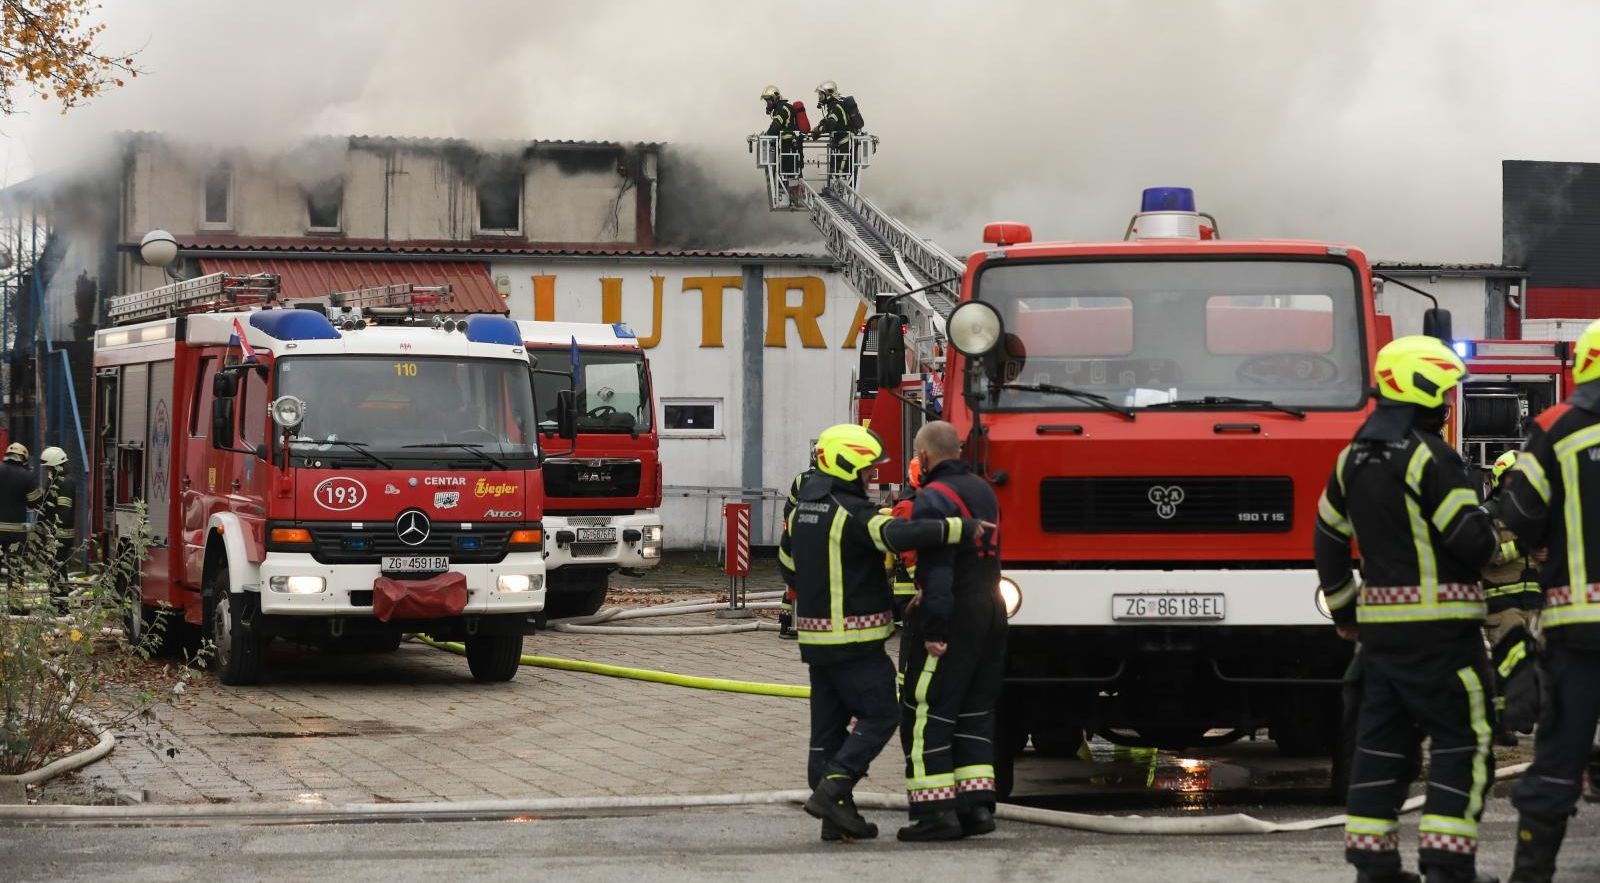 10.11.2020., Zagreb - U Sesvetama na Industrijskoj cesti 26 izbio je pozar u skladistu tvrtke Lutra kojeg gase vatrogasci sa 16 vozila. Photo: Robert Anic/PIXSELL